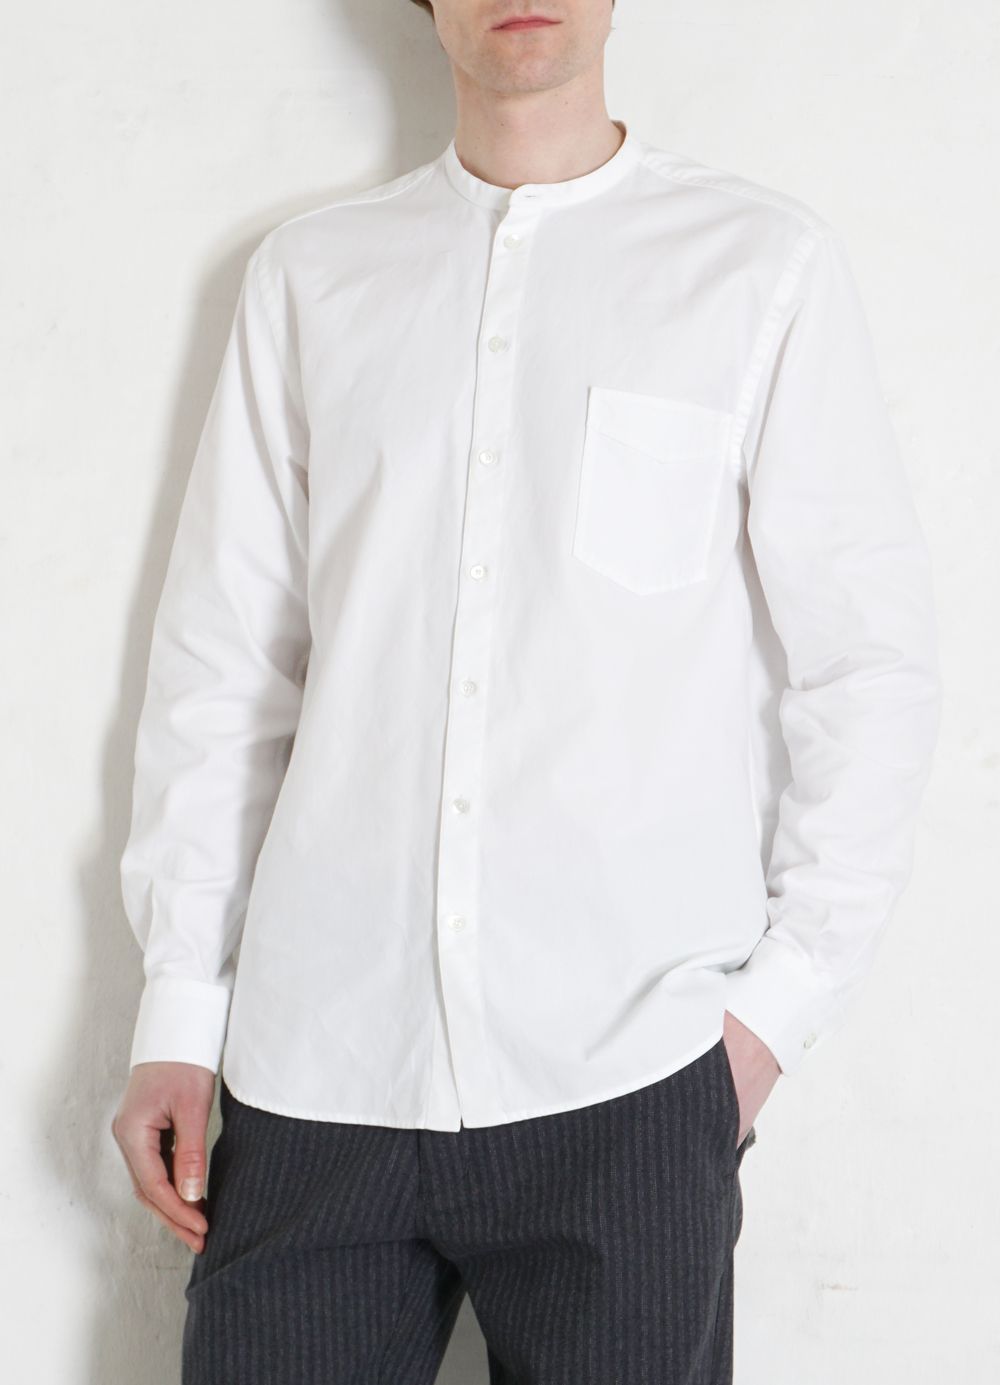 HANSEN Garments - ANTE | Collarless Shirt | White - HANSEN Garments